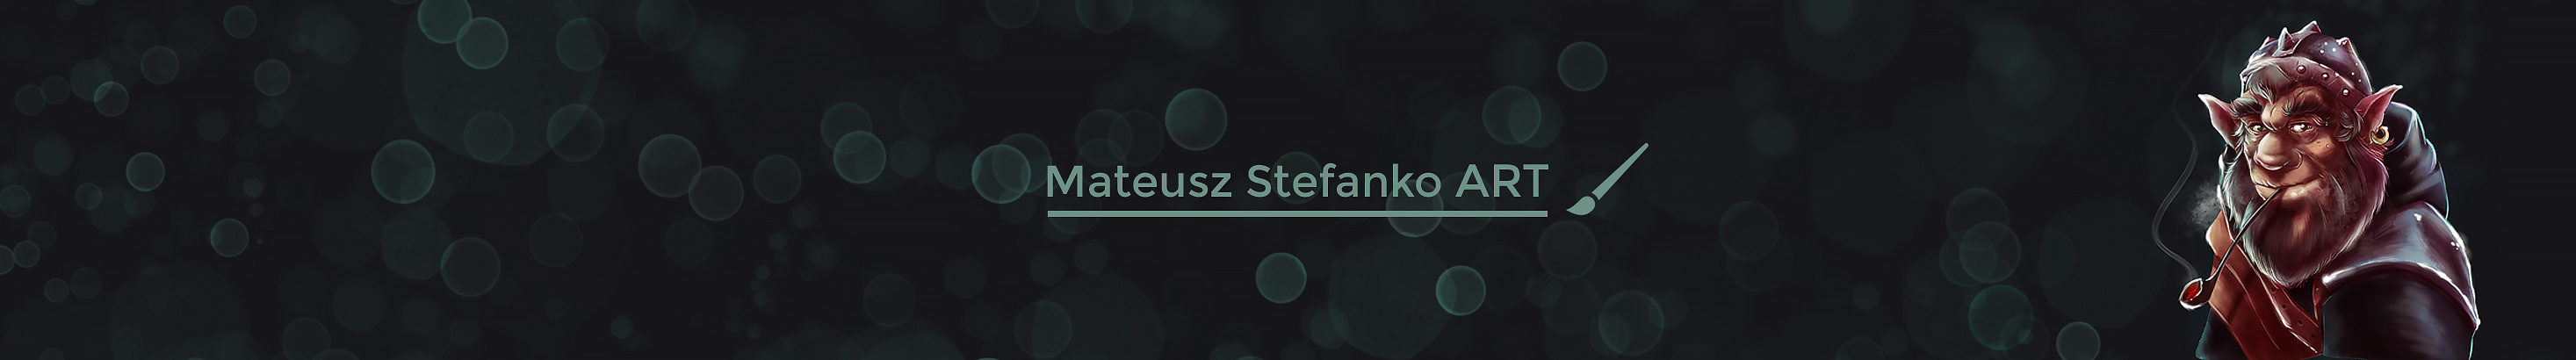 Baner profilu użytkownika Mateusz Stefanko